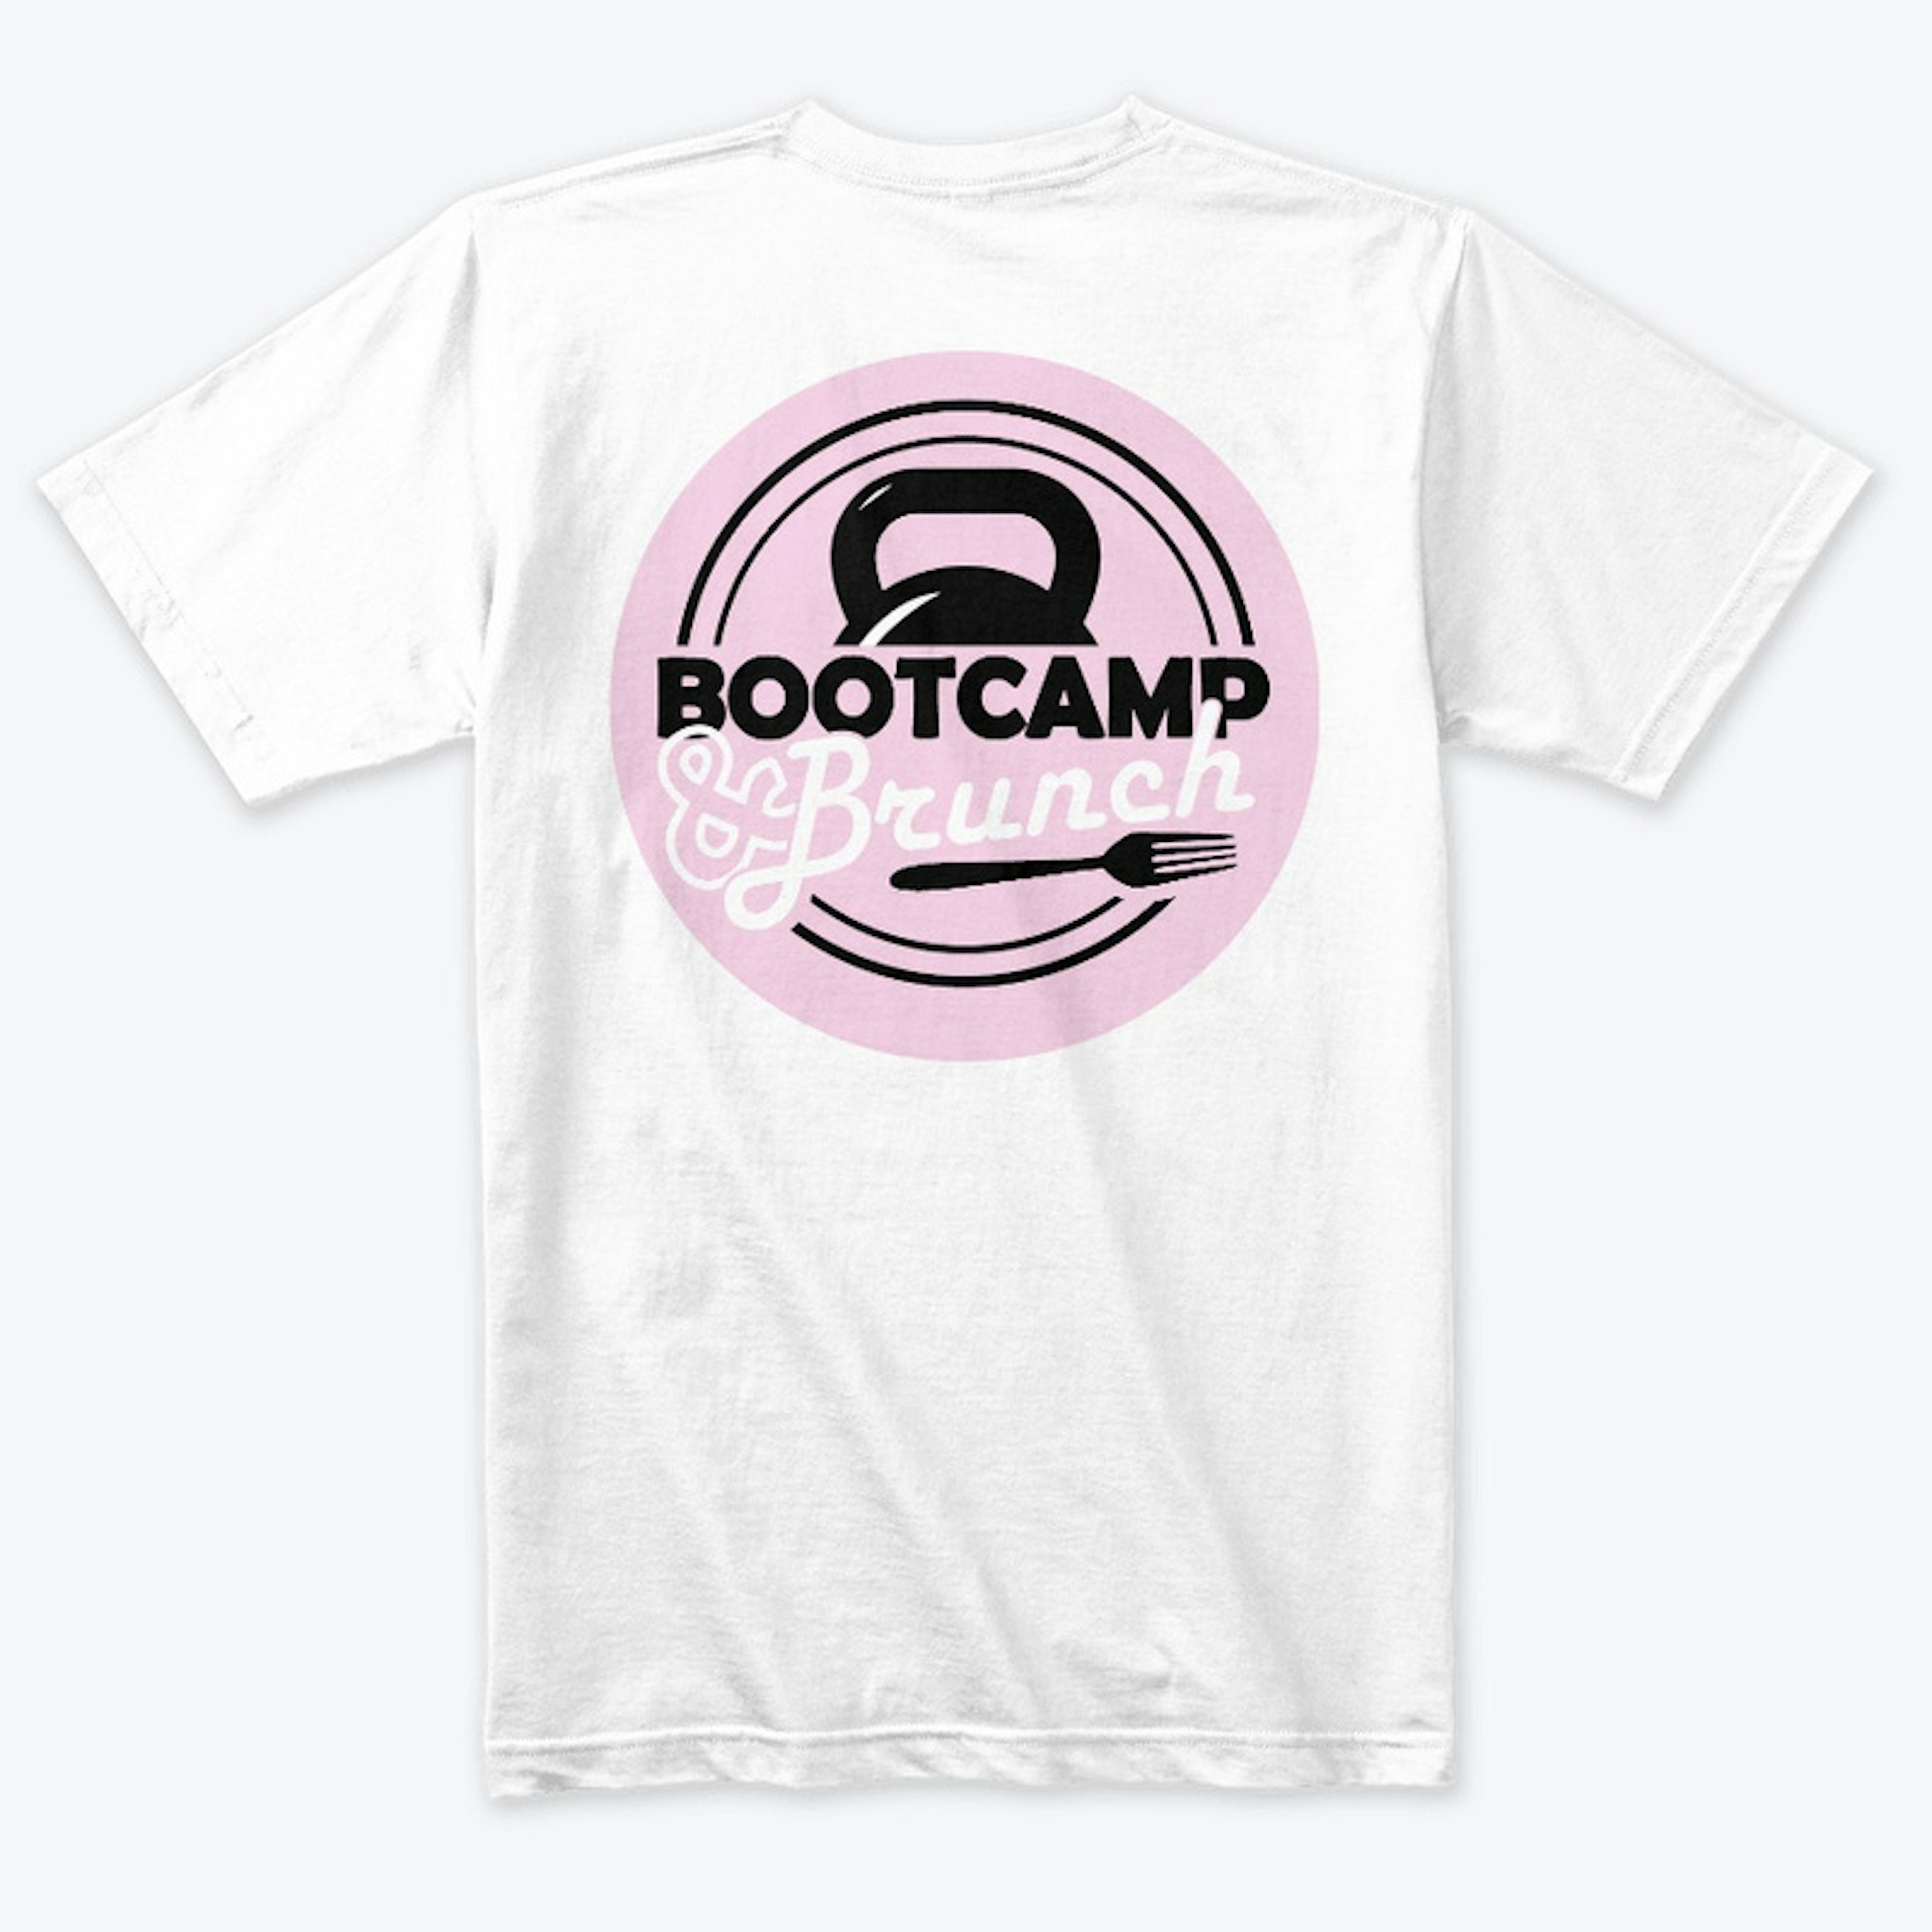 Bootcamp & Brunch Tee